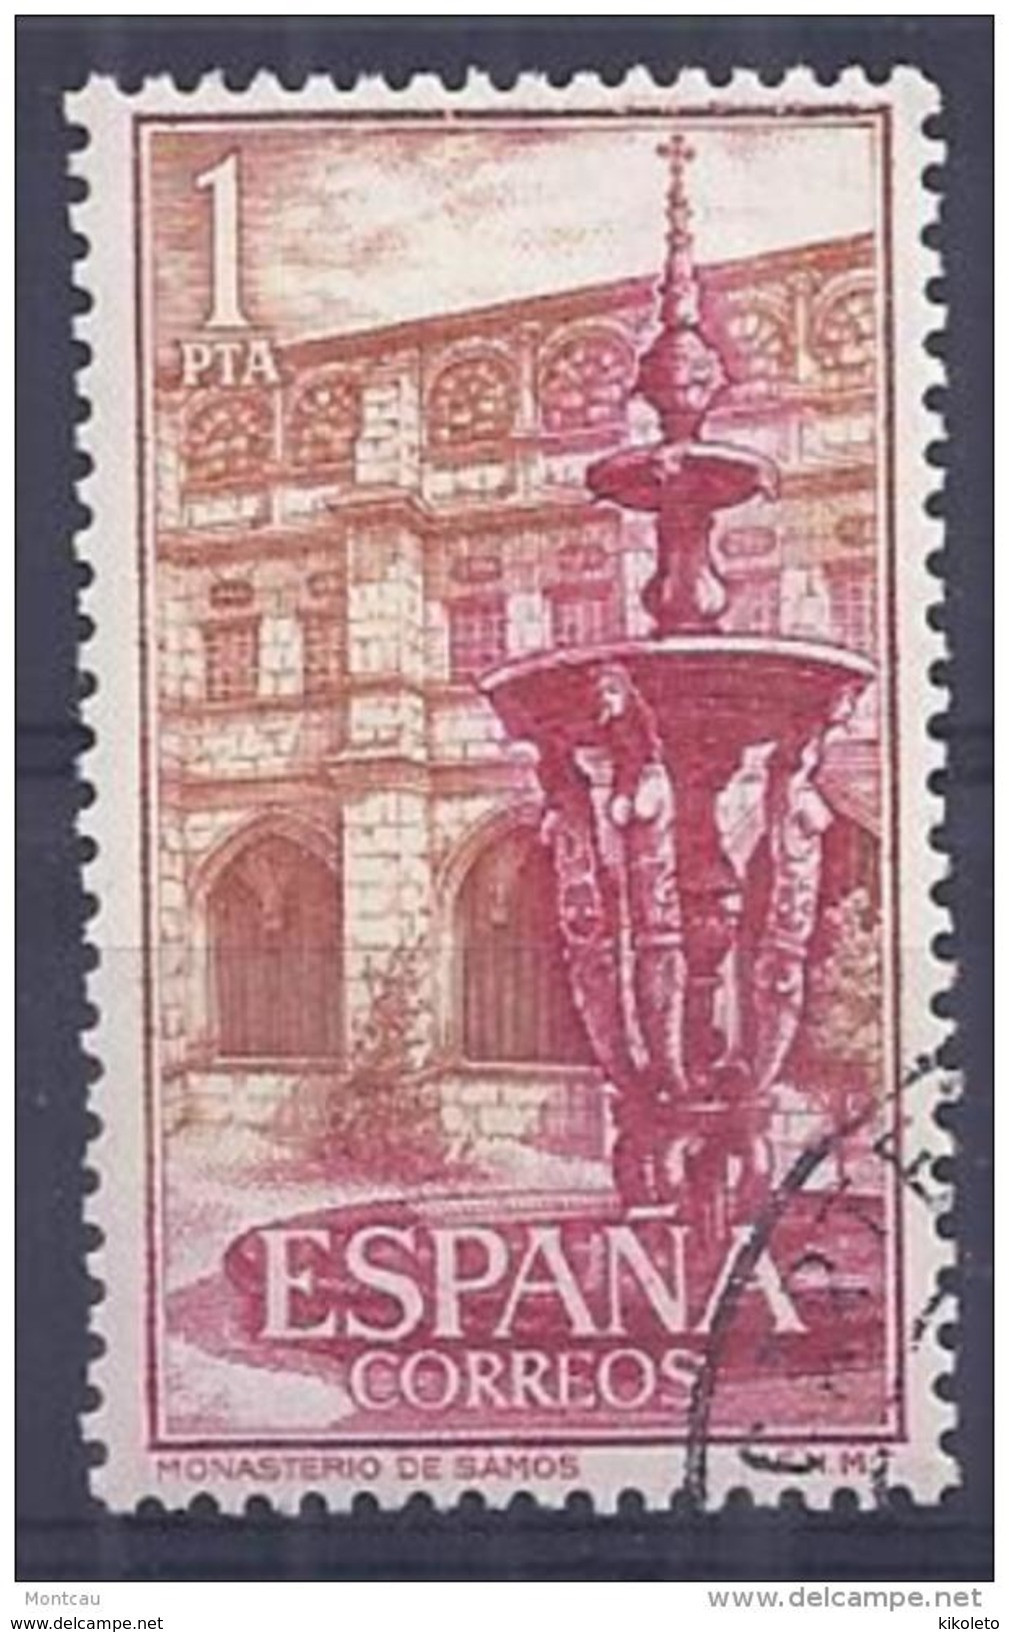 ESPAÑA SPAIN AÑO YEAR 1960 EDIFIL Nº 1323 - USADO (o) USED (o) - REAL MONASTERIO DE SAMOS - 1 Pta - Used Stamps